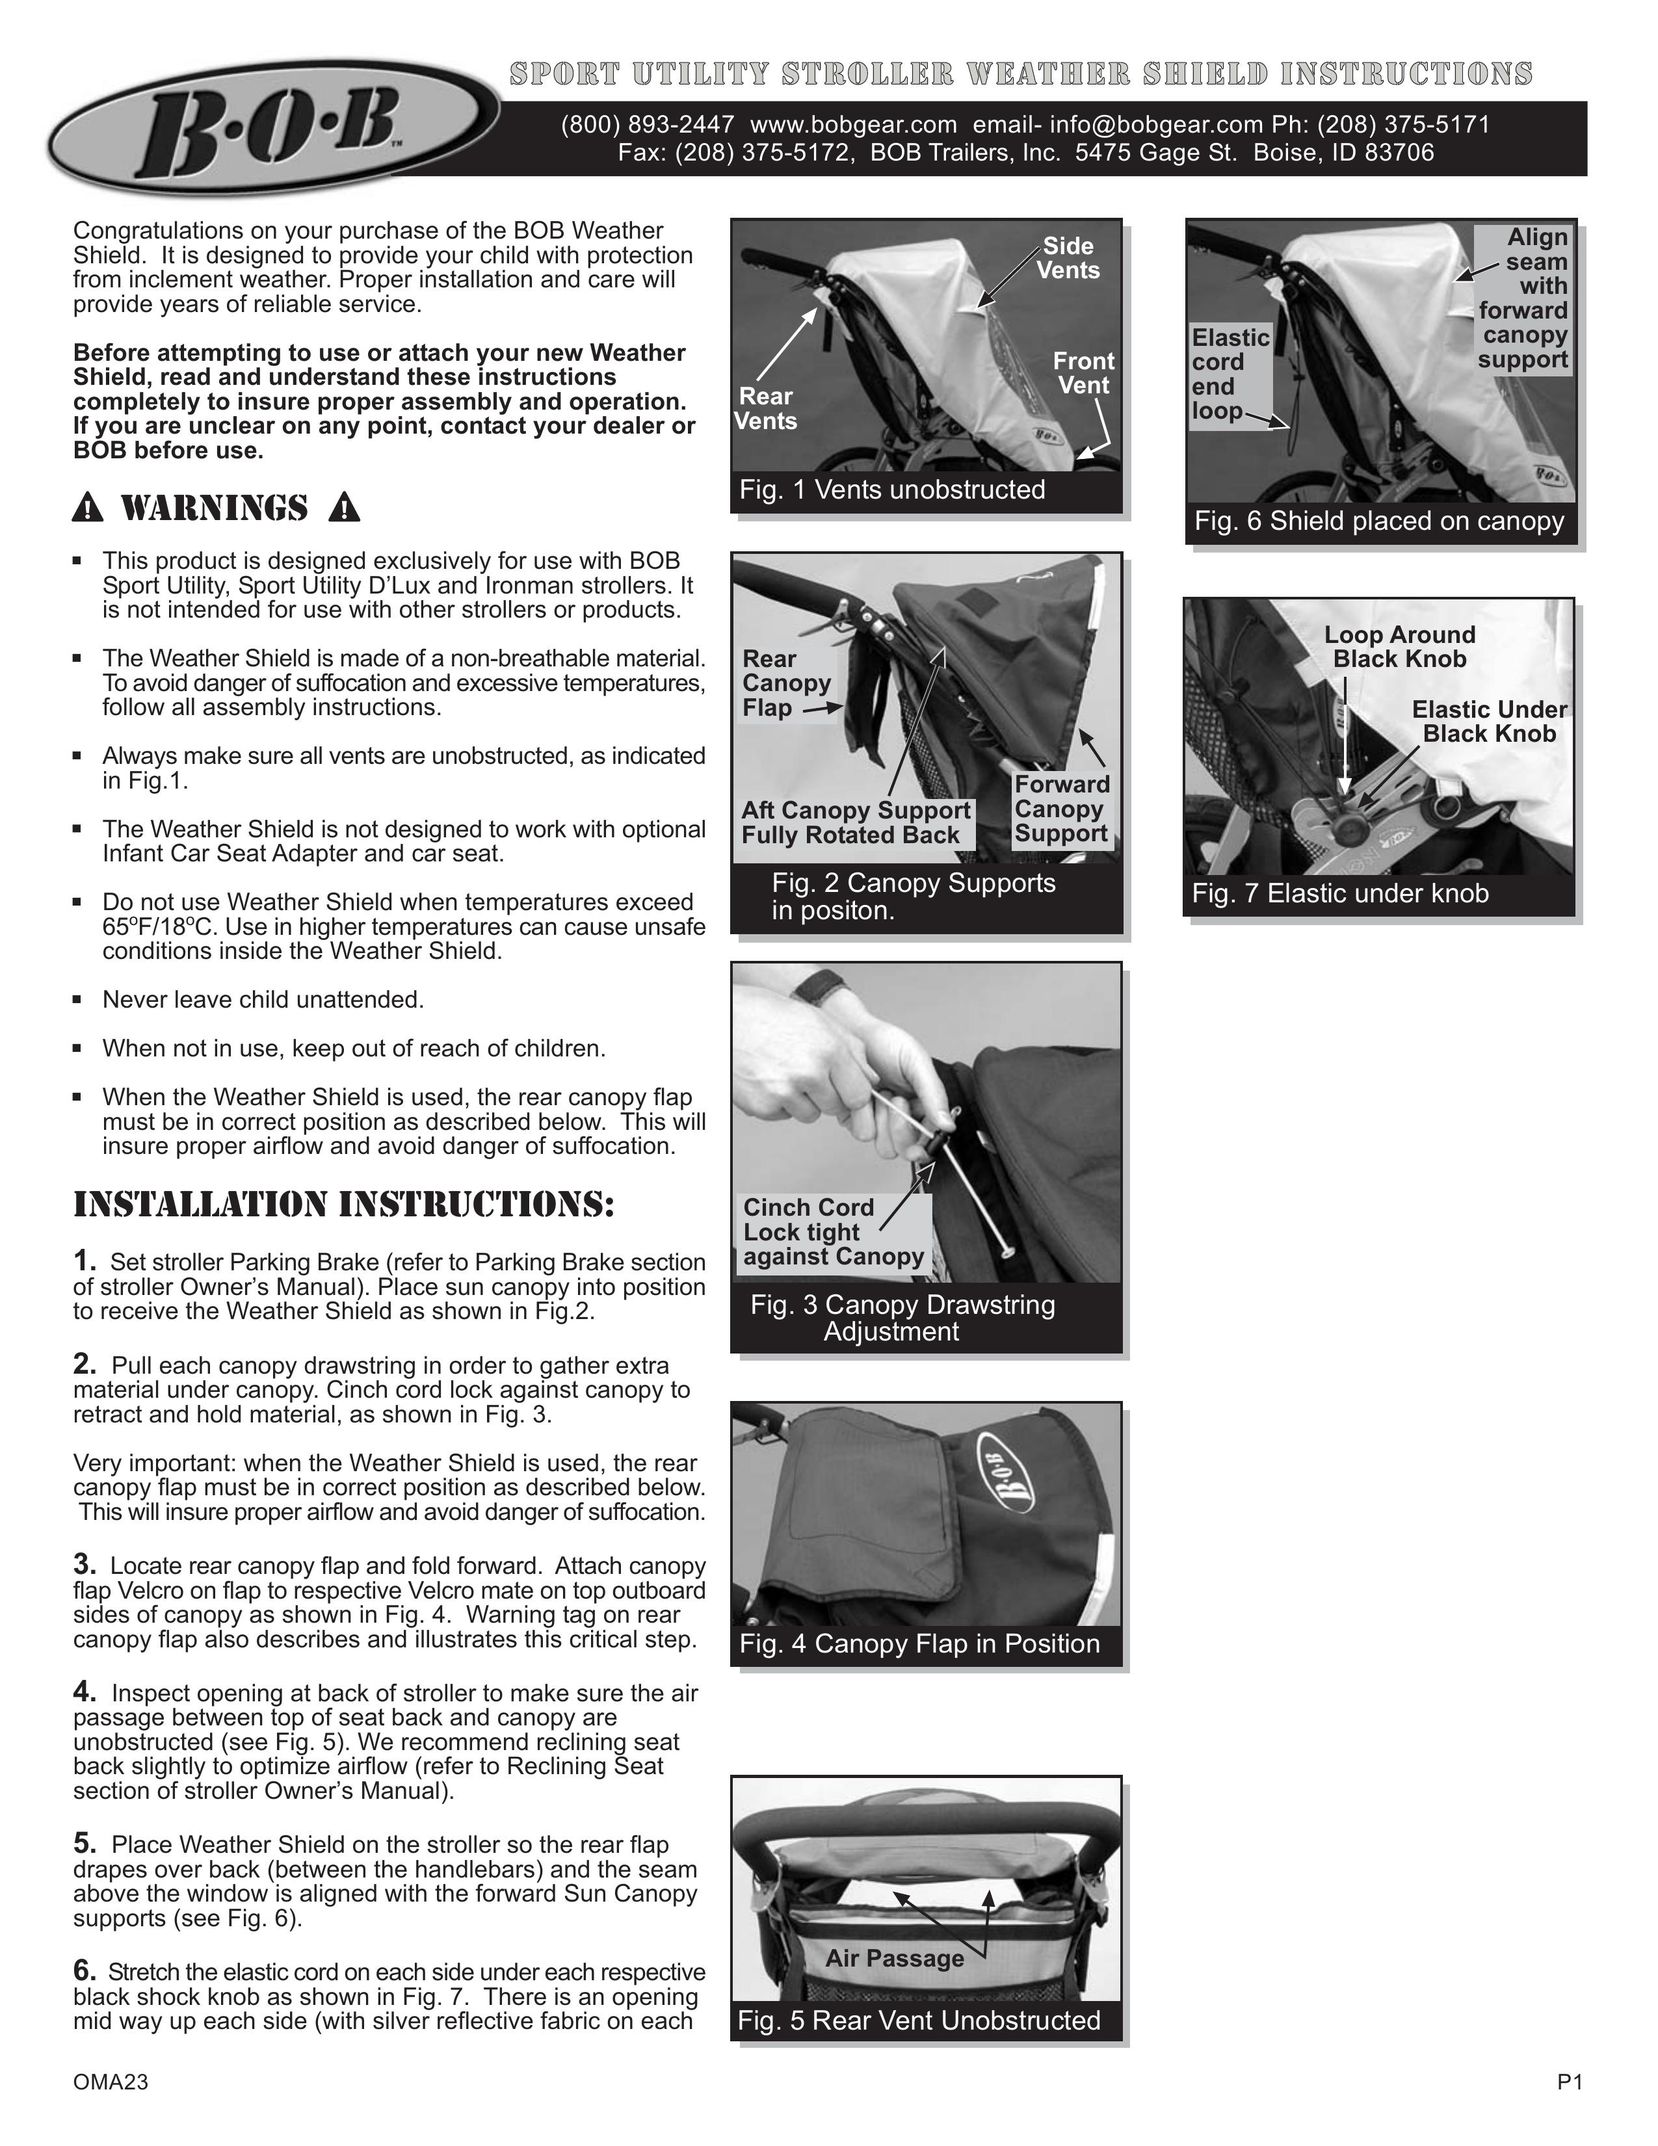 BOB OMA23 Stroller User Manual